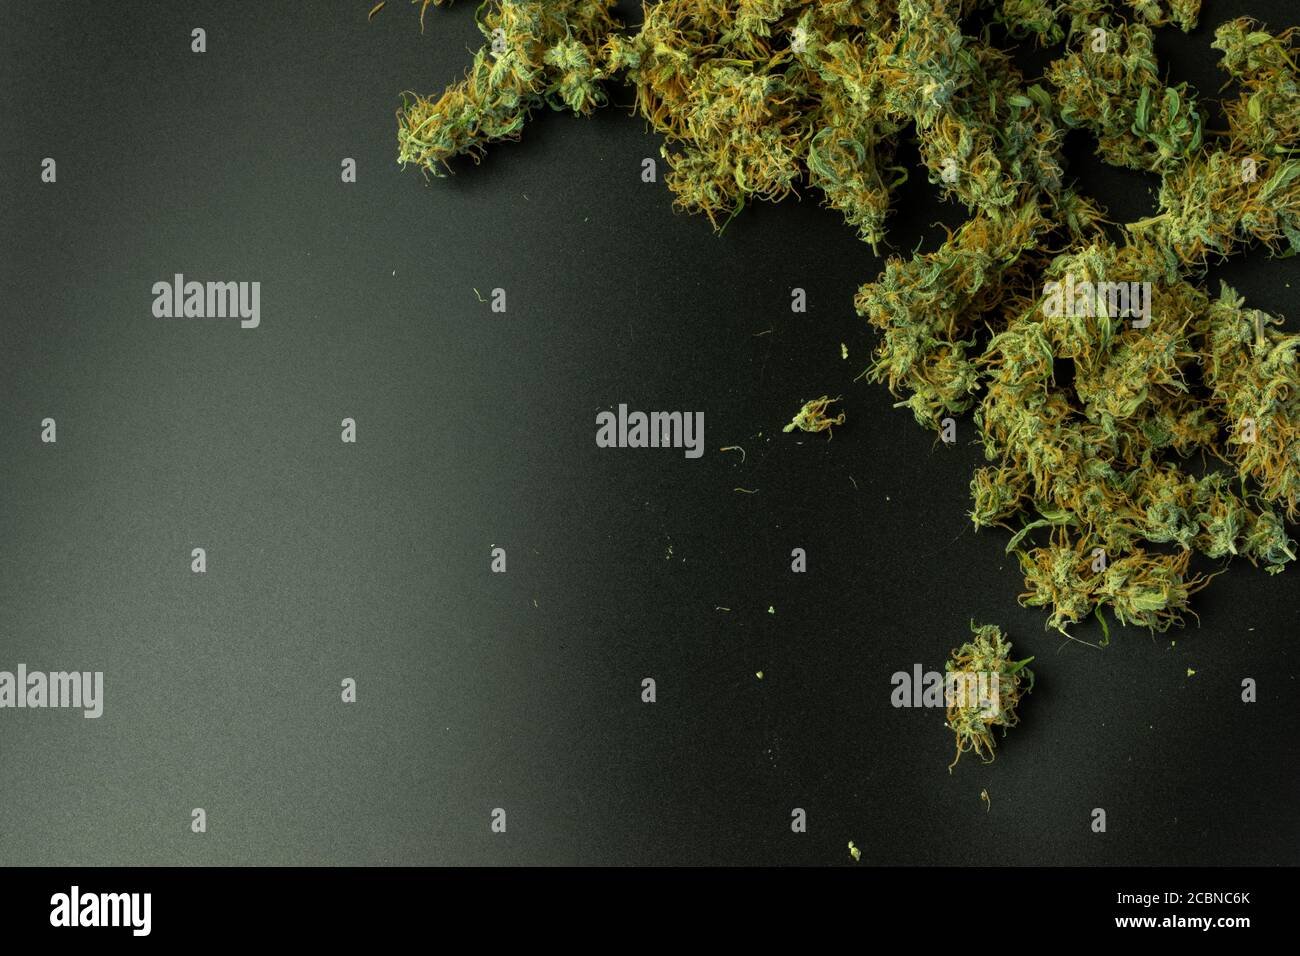 Cannabis plat avec espace de copie Banque D'Images